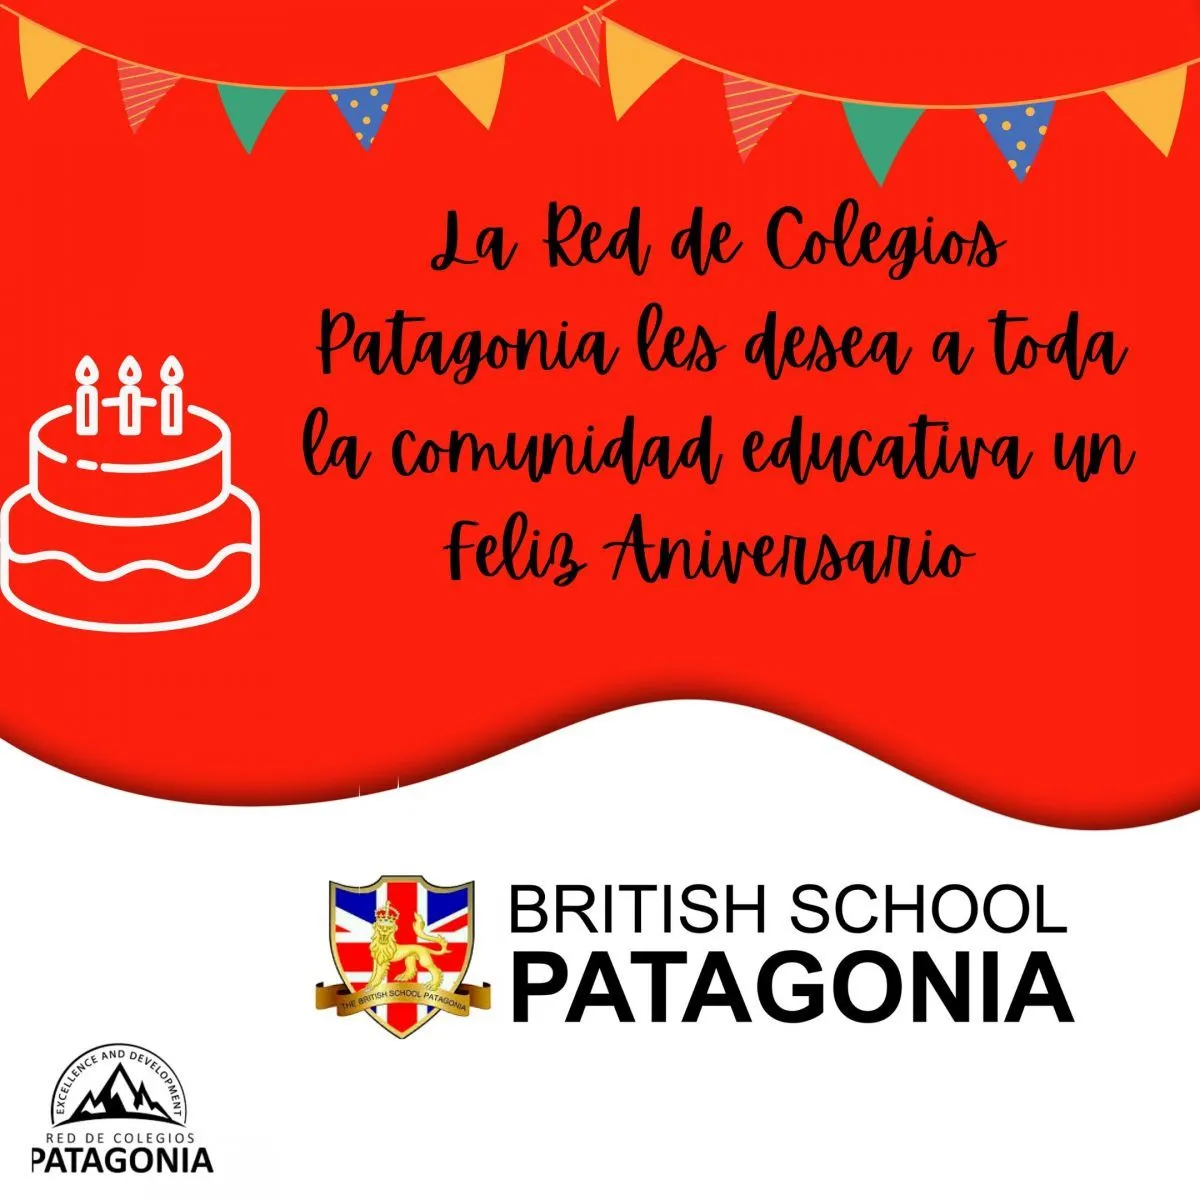 Muchas felicitaciones The British School Patagonia en su nuevo Aniversario